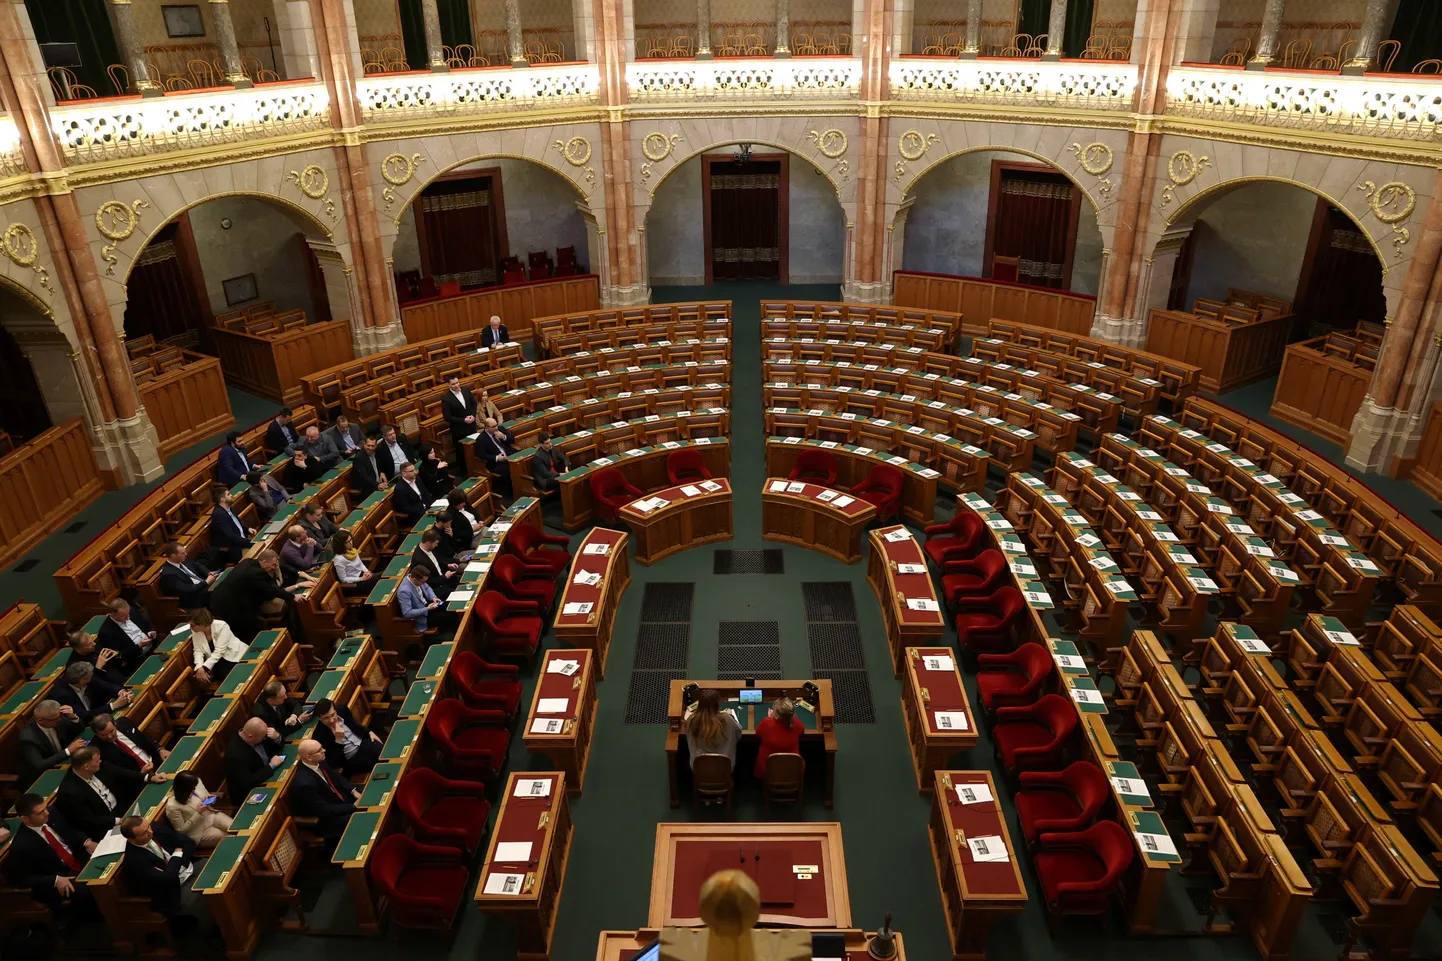 Ungari parlamendi erakorraline istung Rootsi NATOga liitumise teemal. Parlamendisaal on pooltühi, sest valitsusparteid kohale ei tulnud. 5. veebruar 2024.